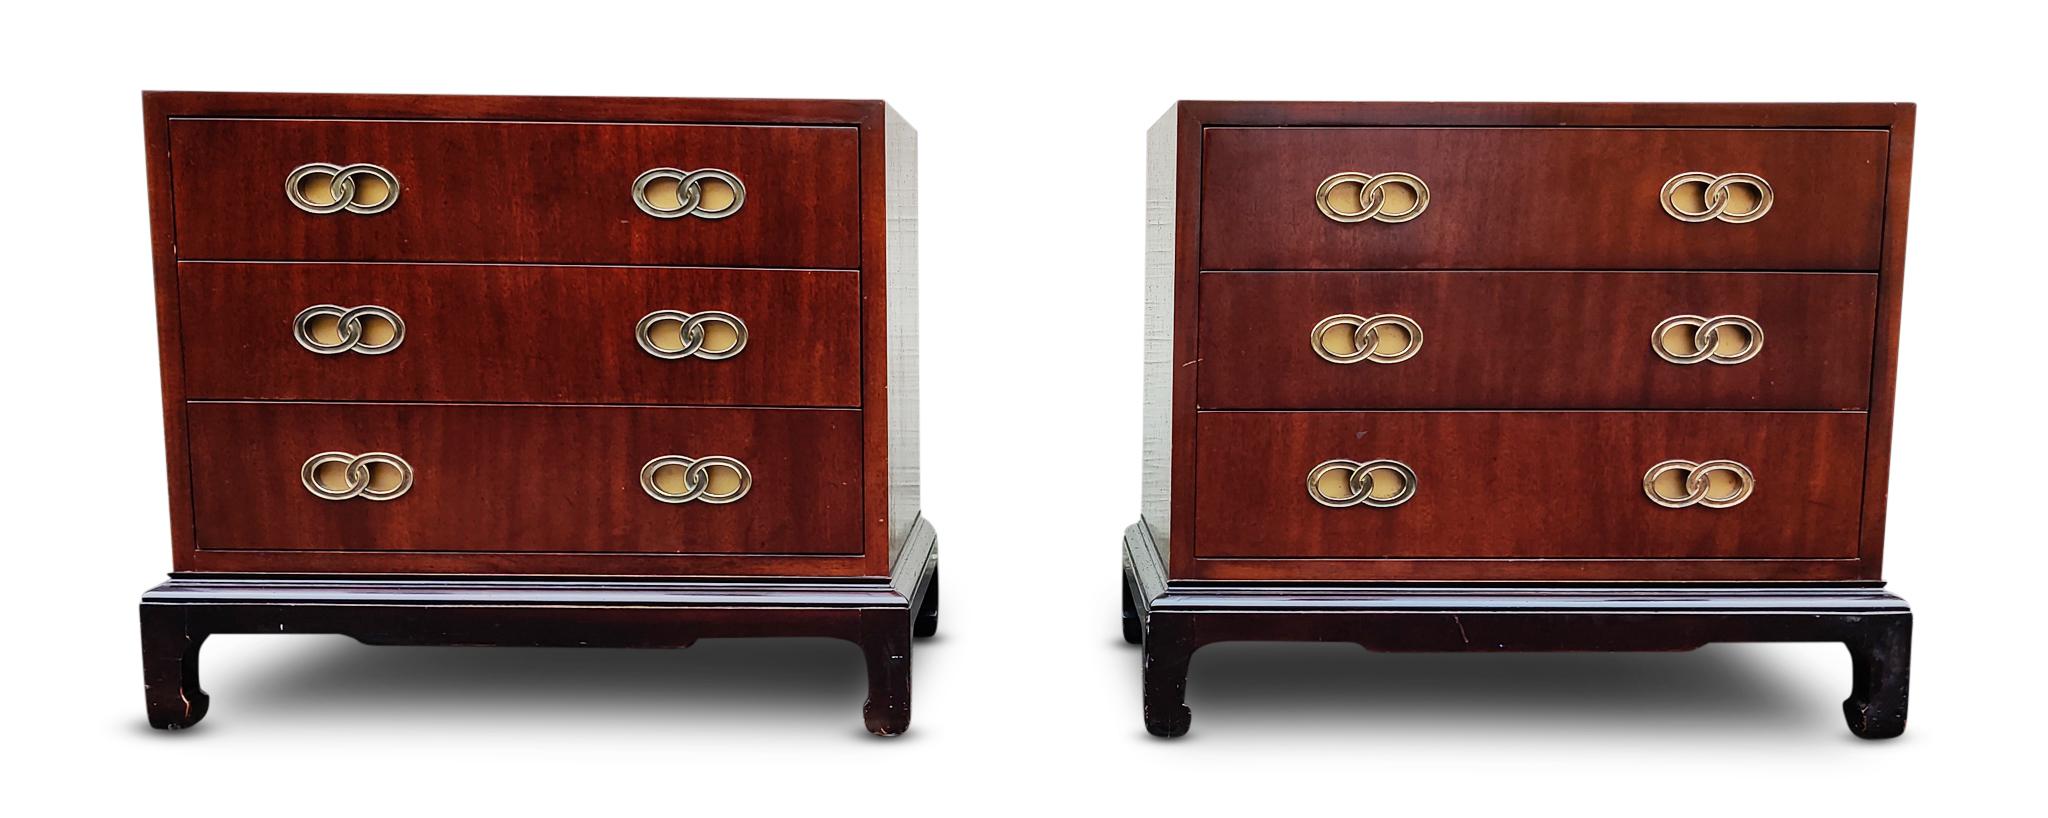 Dieses Paar hübscher Nachttische oder Beistelltische wurde von Henredon in den Vereinigten Staaten um 1960 entworfen und hergestellt. Sie sind aus satiniertem Mahagoniholz gefertigt und stehen auf schwarz emaillierten Sockeln. Die 3 Schubladen jedes